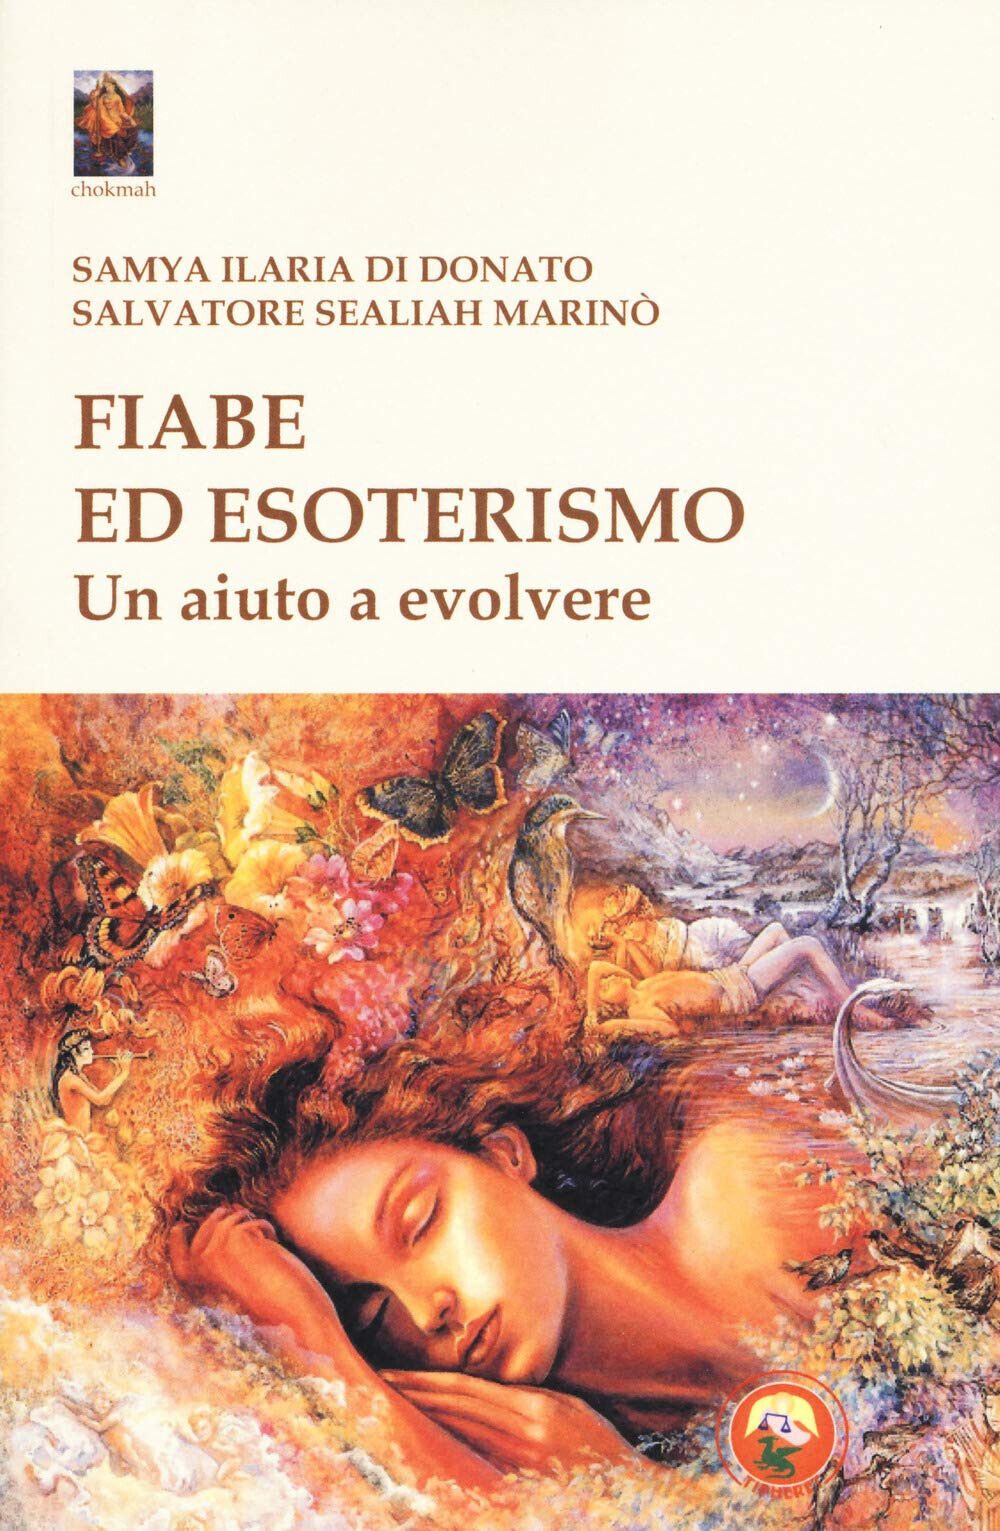 Fiabe ed esoterismo - Samya Ilaria Di Donato, Salvatore Sealiah Marin? - 2019 libro usato